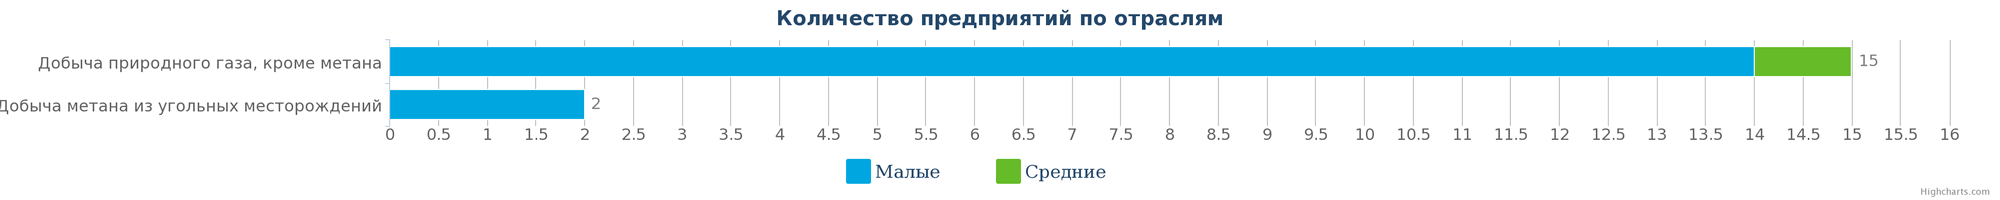 Количество компаний, занимающиеся добычей природного газа в Казахстане по видам деятельности на 09.01.2017